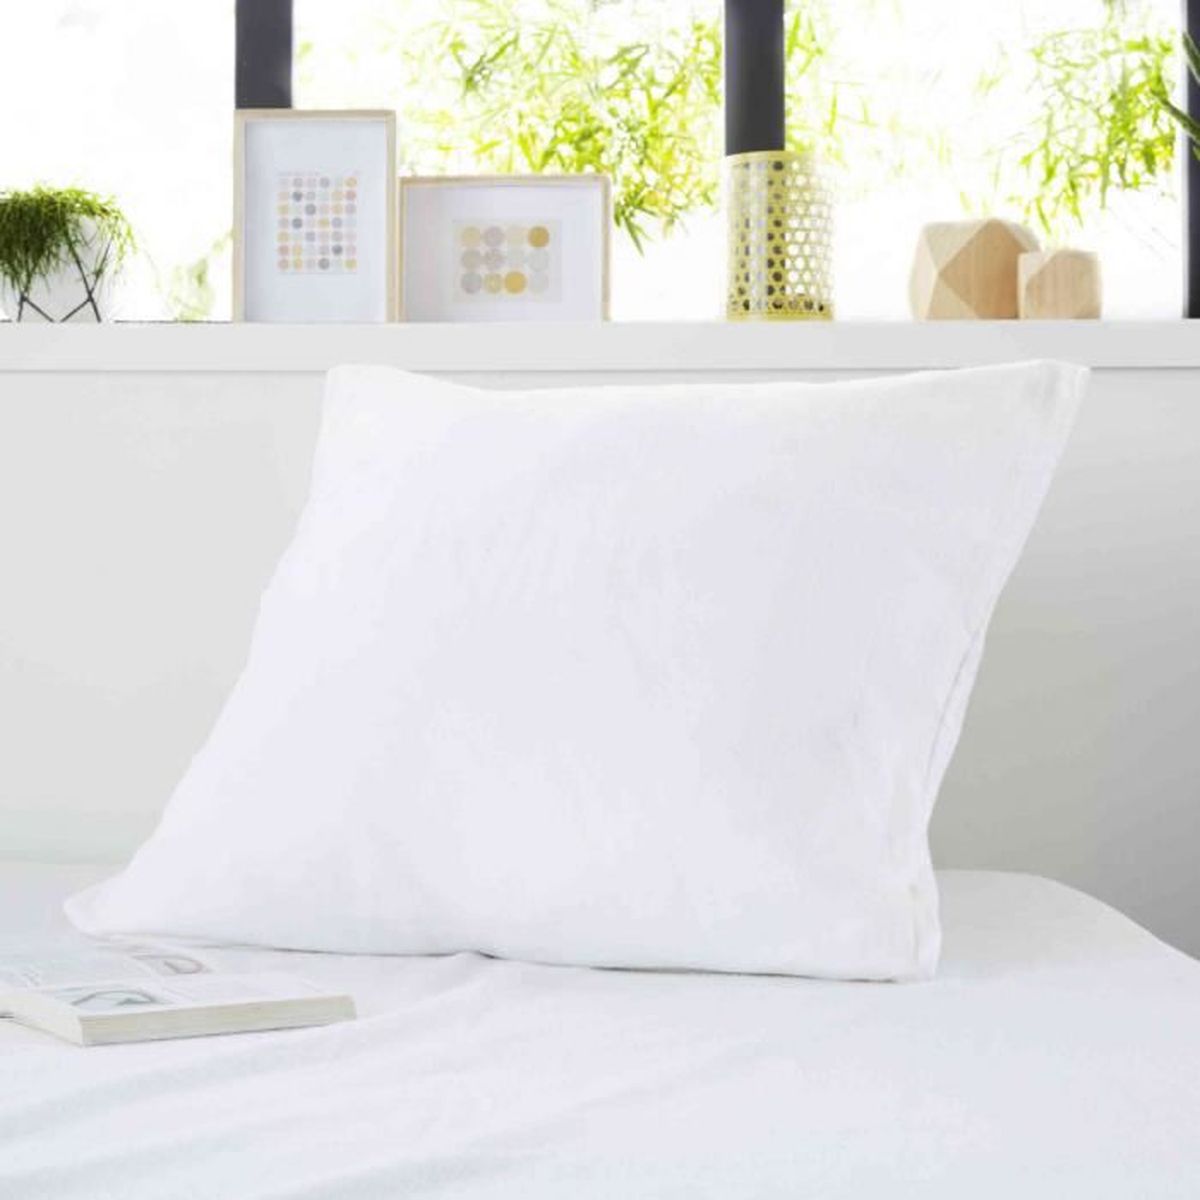 Protège oreiller NUIT FAUBOURG DAUPHINE blanc L. 65 x l. 65 cm